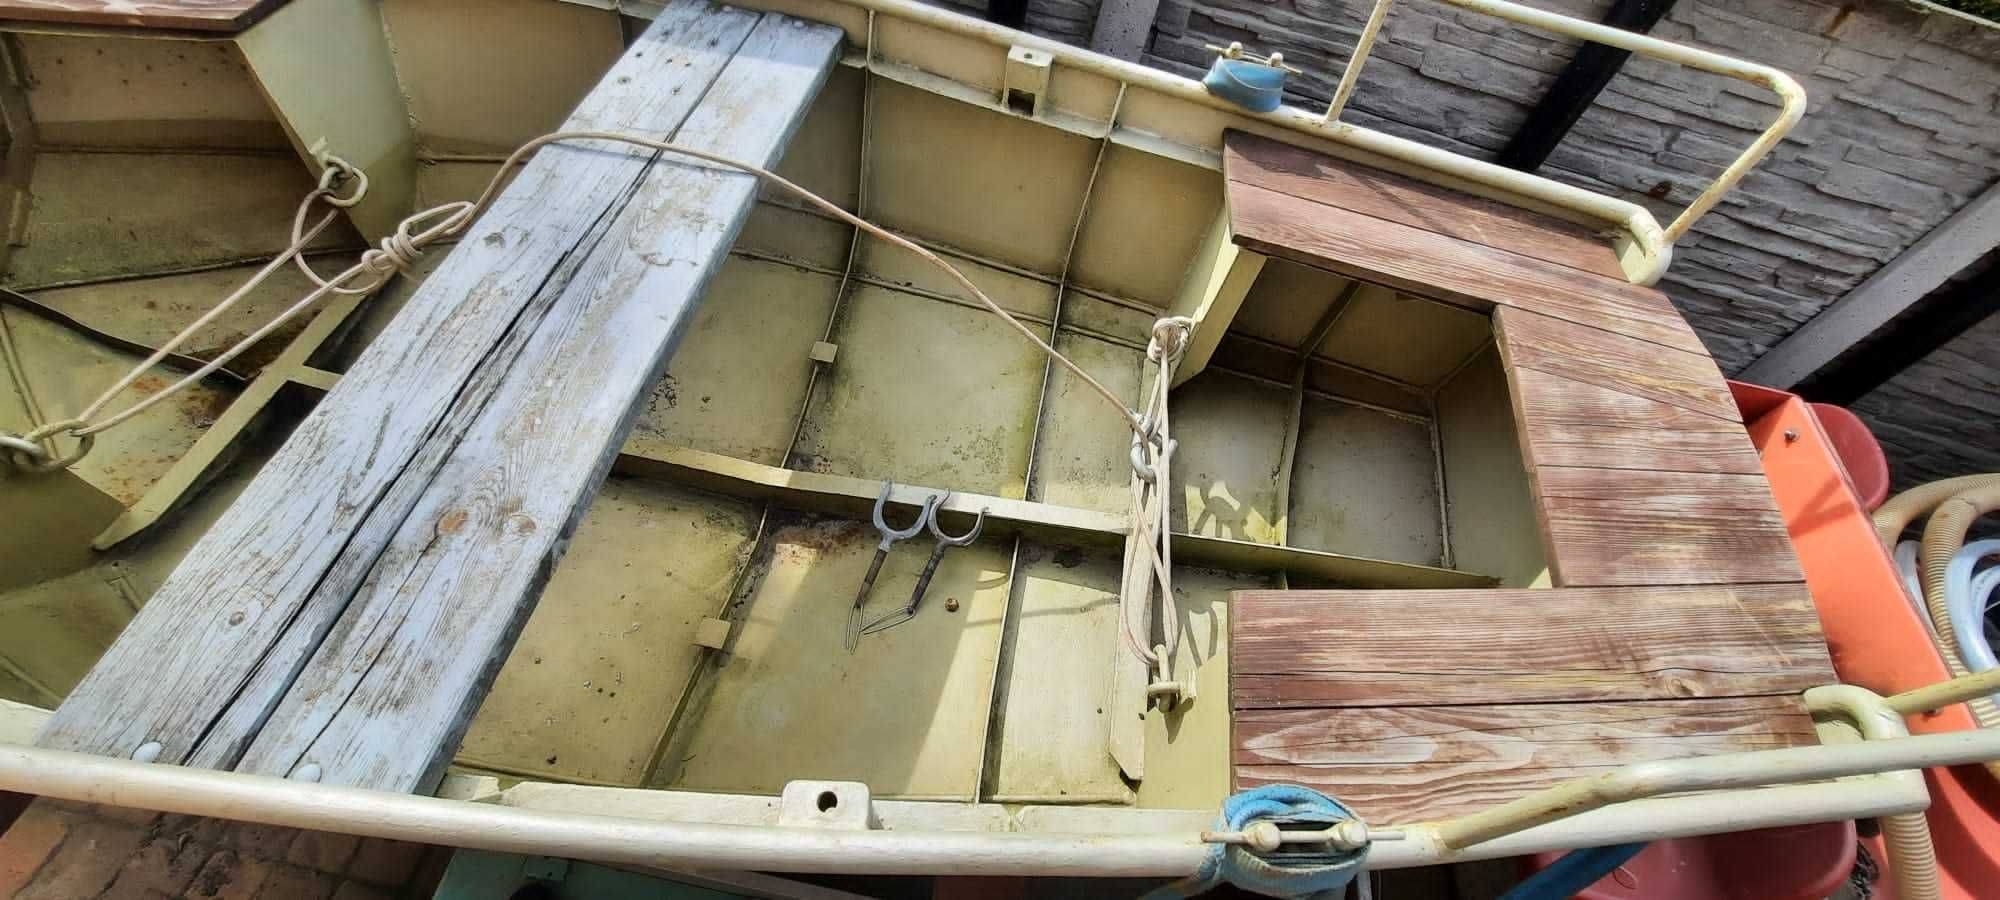 łódź wędkarska   szalupowa ratunkowa